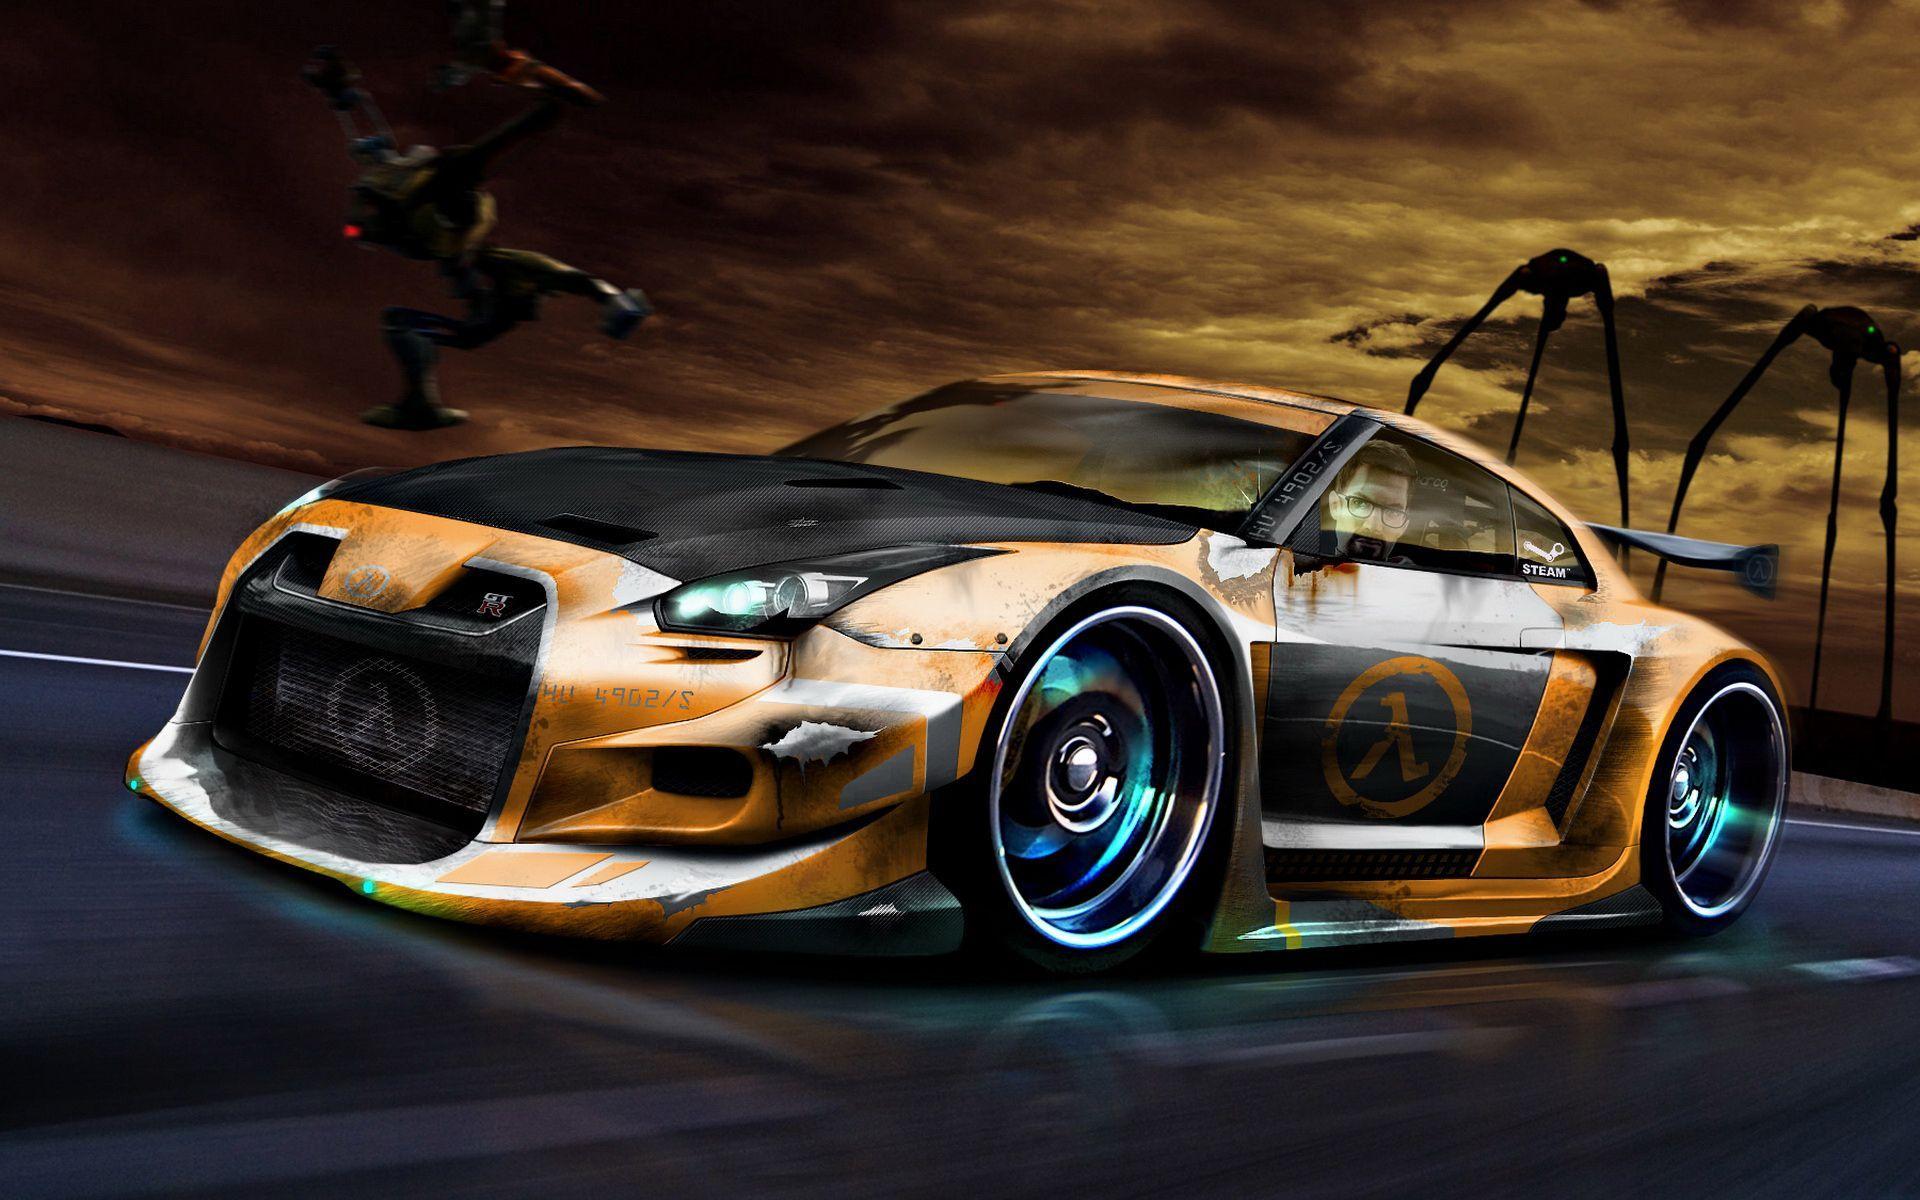 street racing car pics. Cool sports car wallpaper Auto desktop background. Sports car wallpaper, Cool car wallpaper hd, Cool car picture